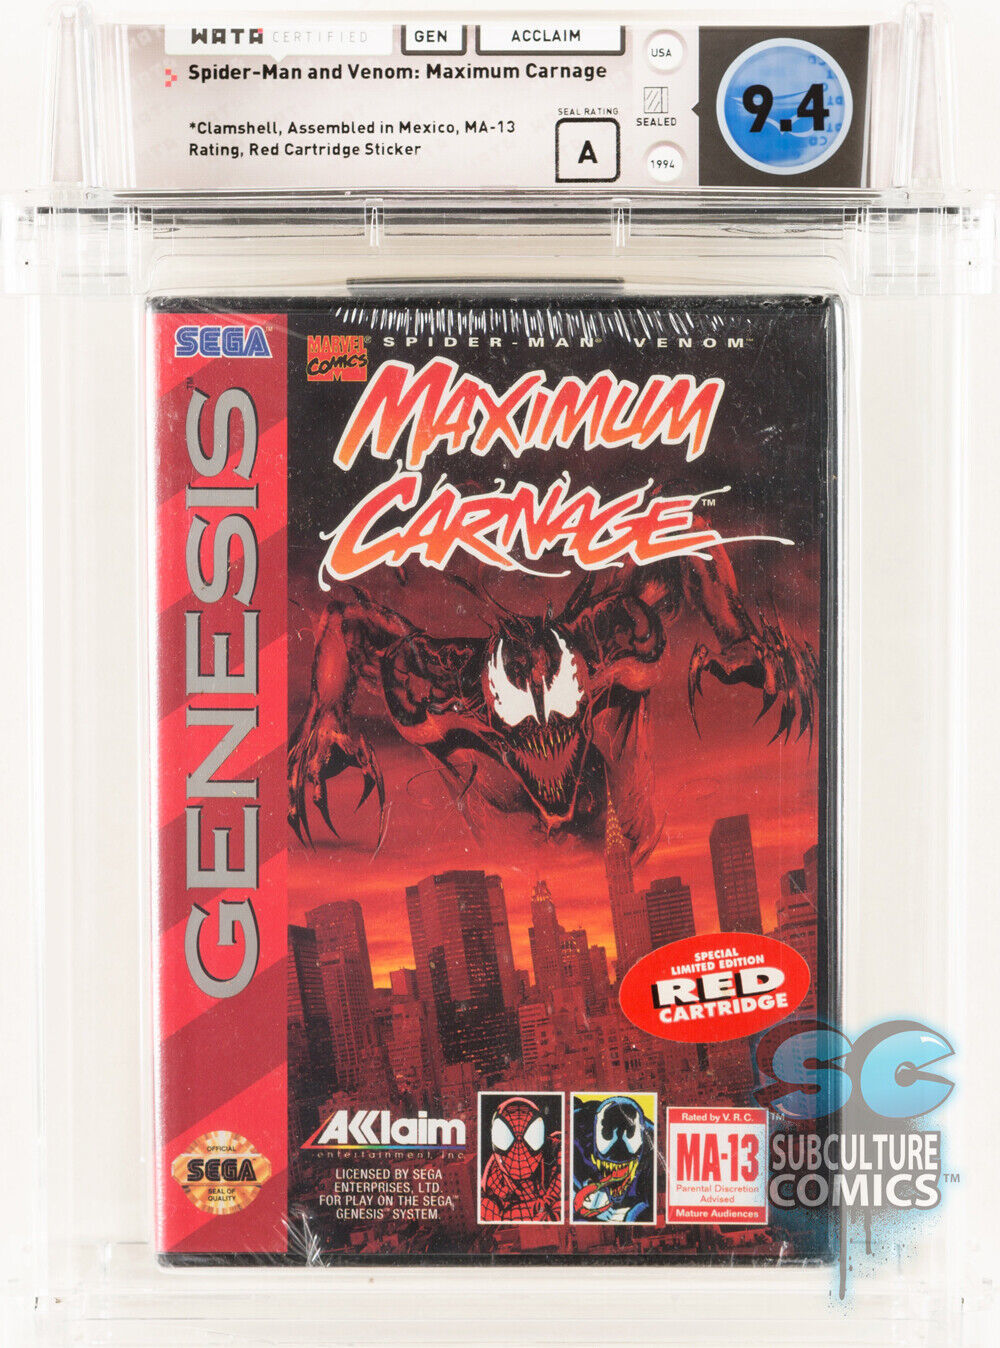 Spider-Man/Venom: Maximum Carnage (Sega Genesis)